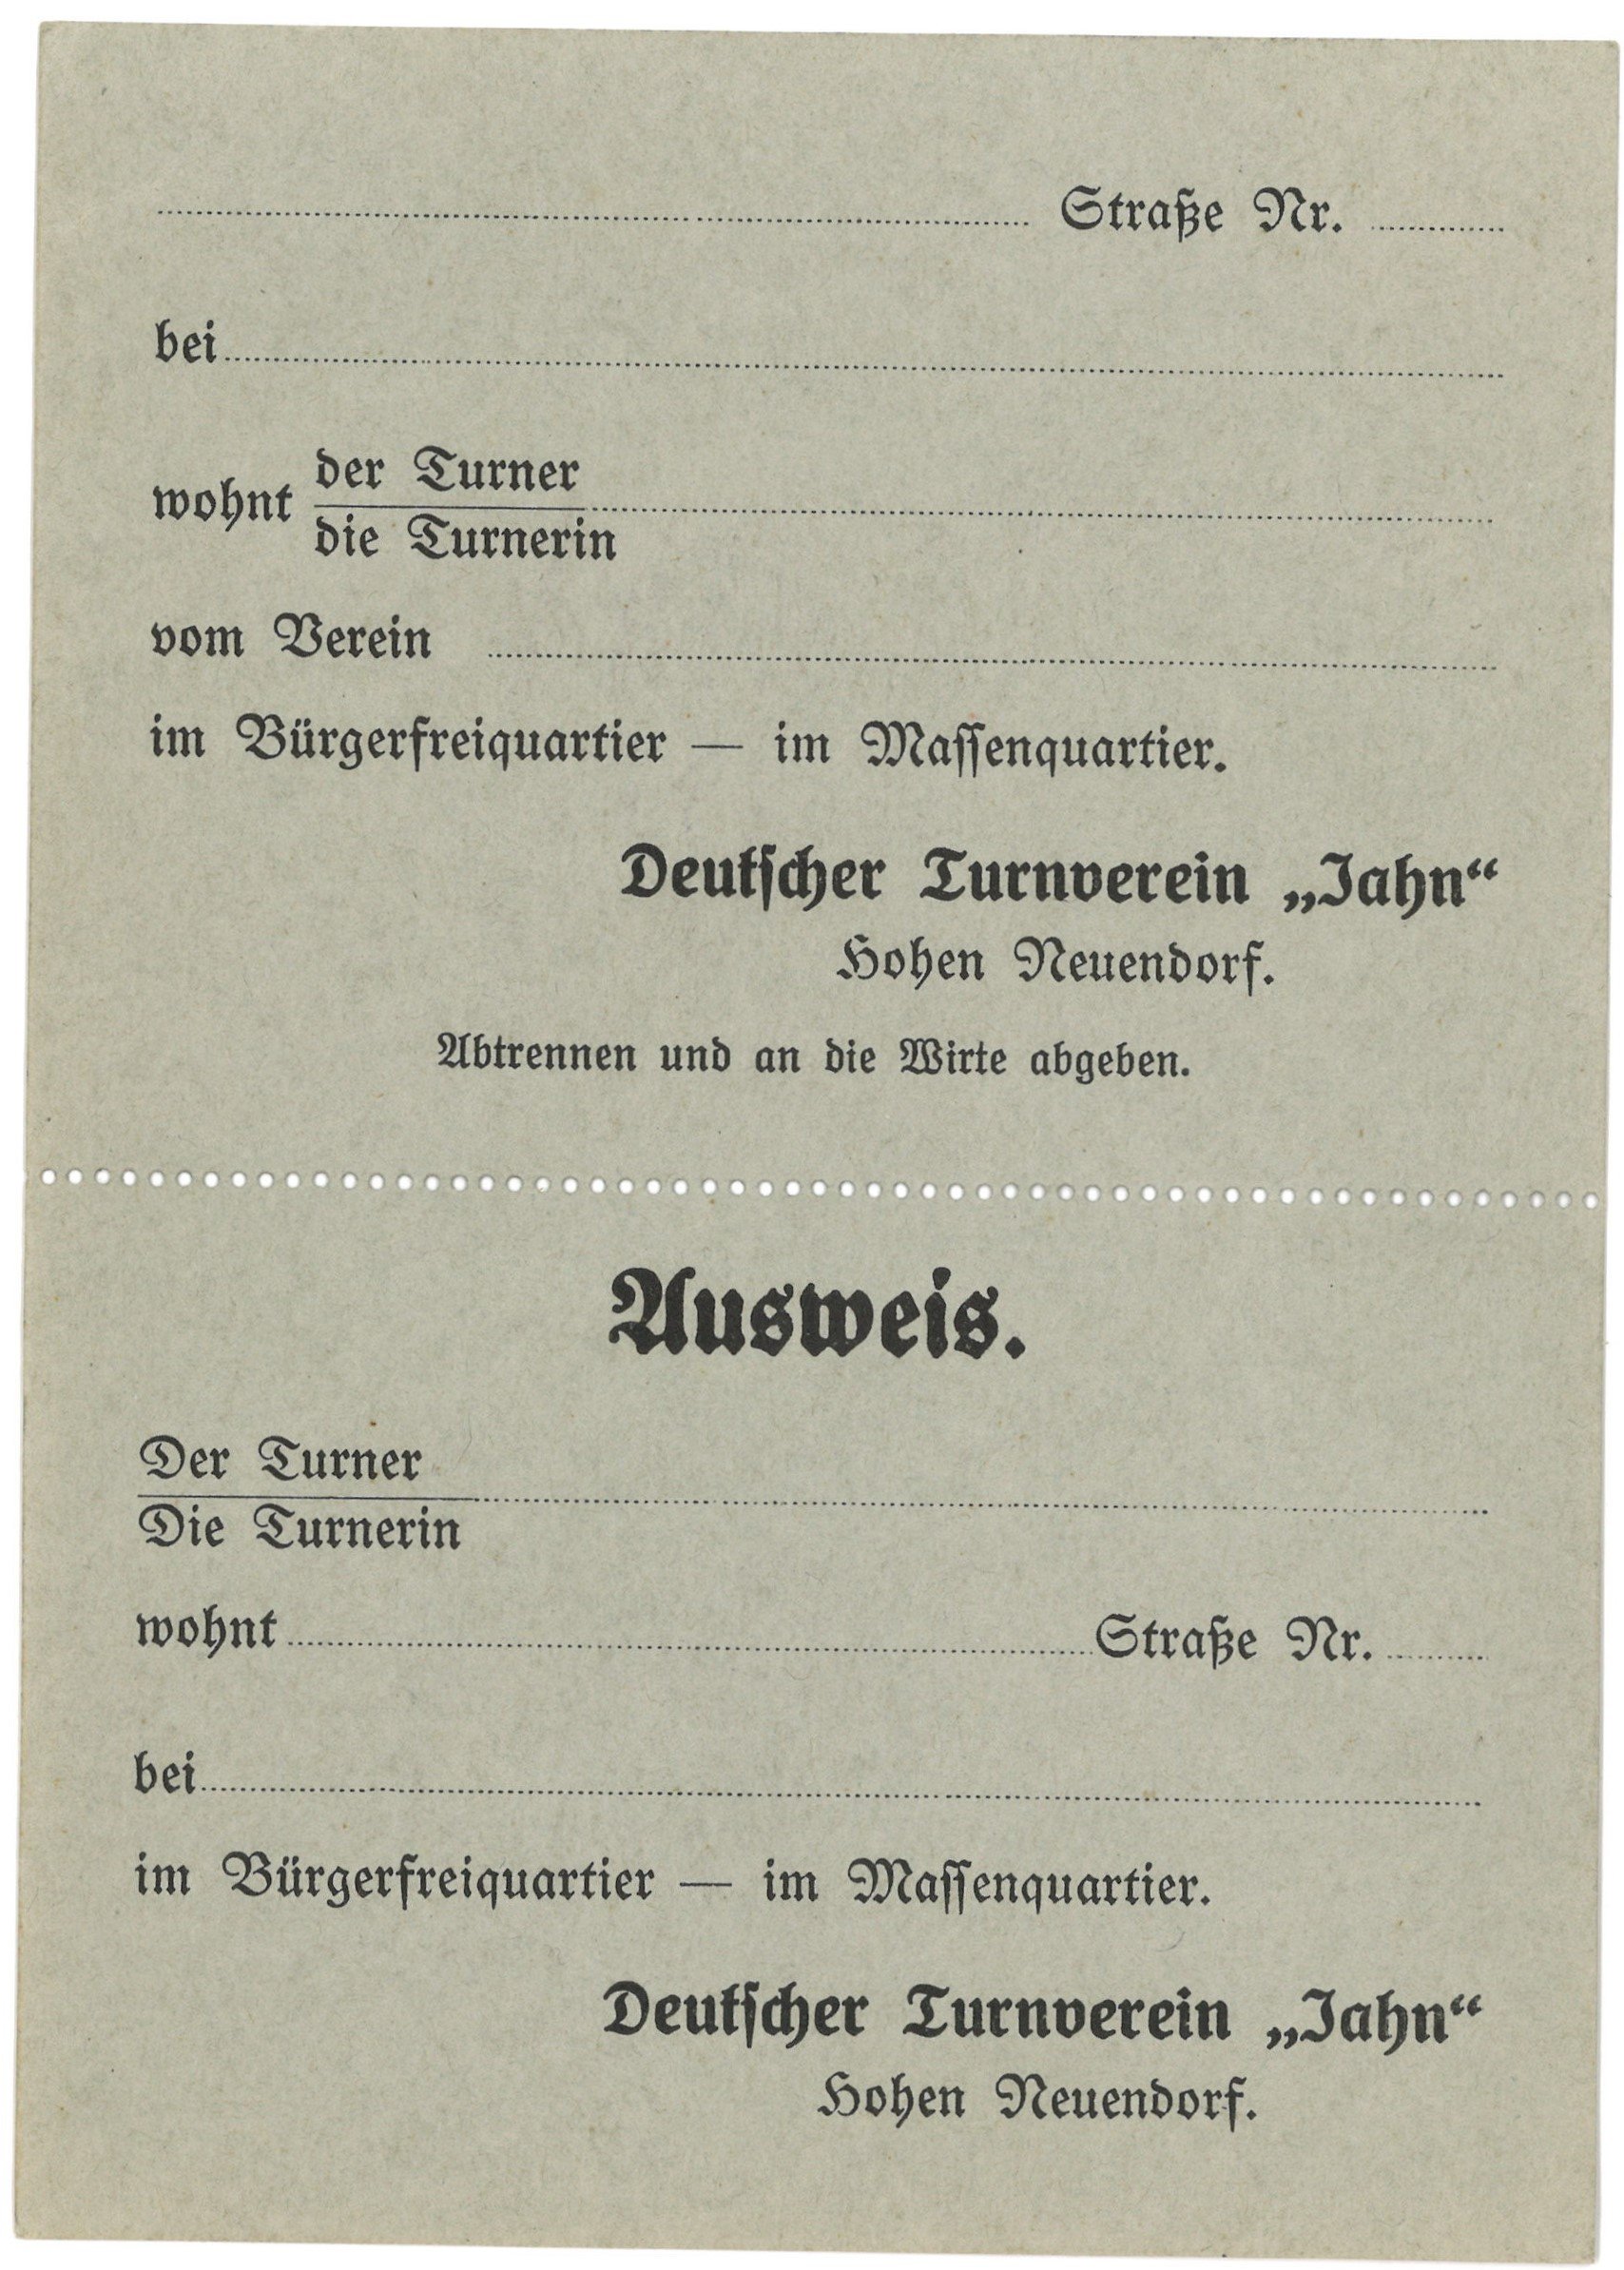 Hohen Neuendorf, Deutscher Turnverein "Jahn": Ausweis (Landesgeschichtliche Vereinigung für die Mark Brandenburg e.V., Archiv CC BY)